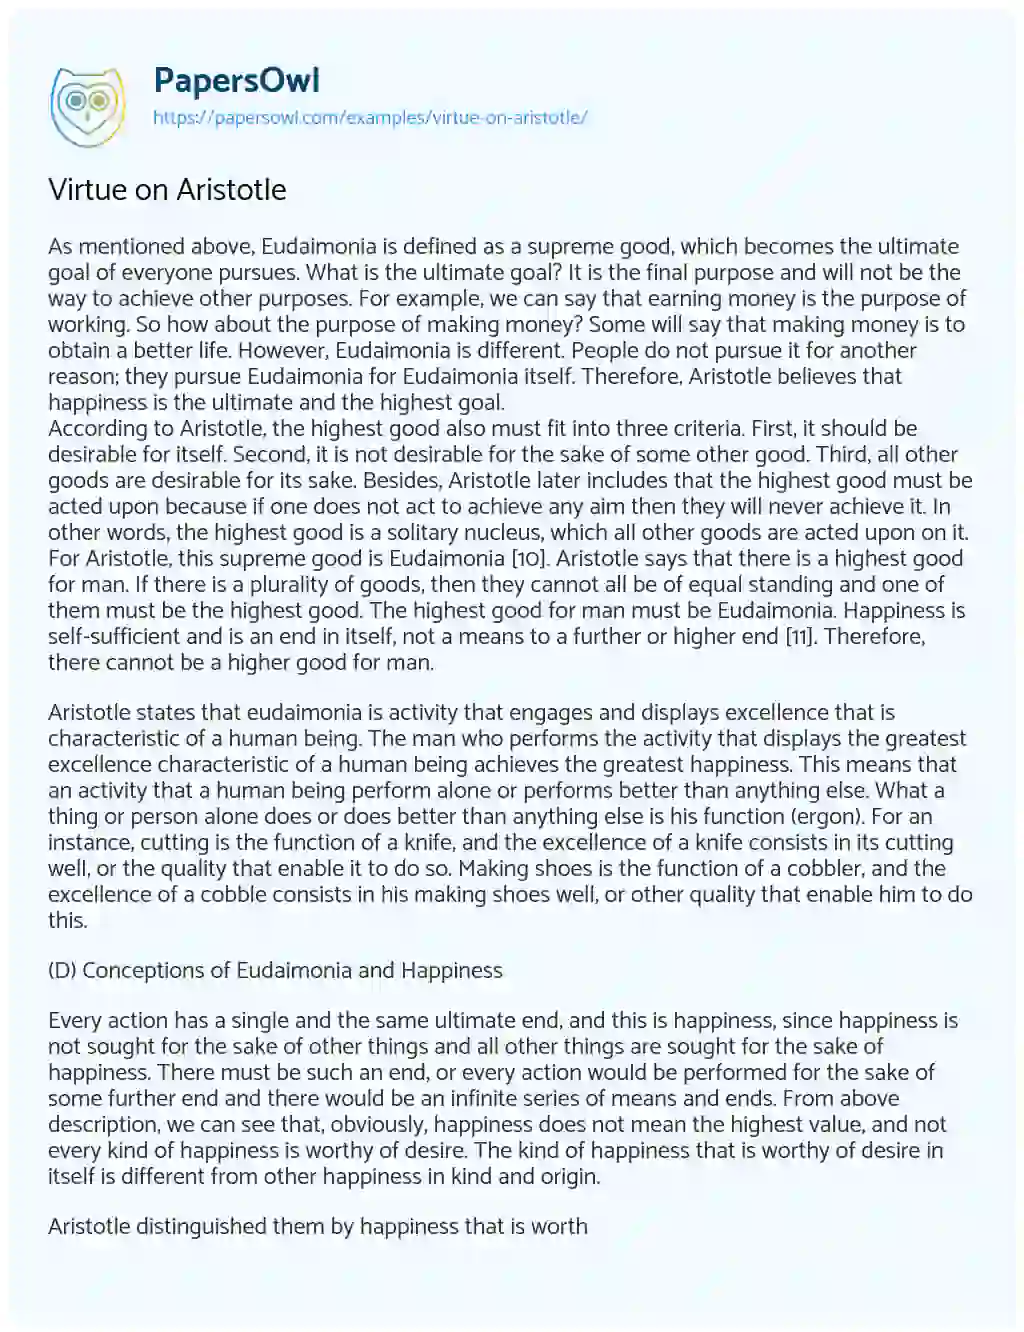 Virtue on Aristotle essay